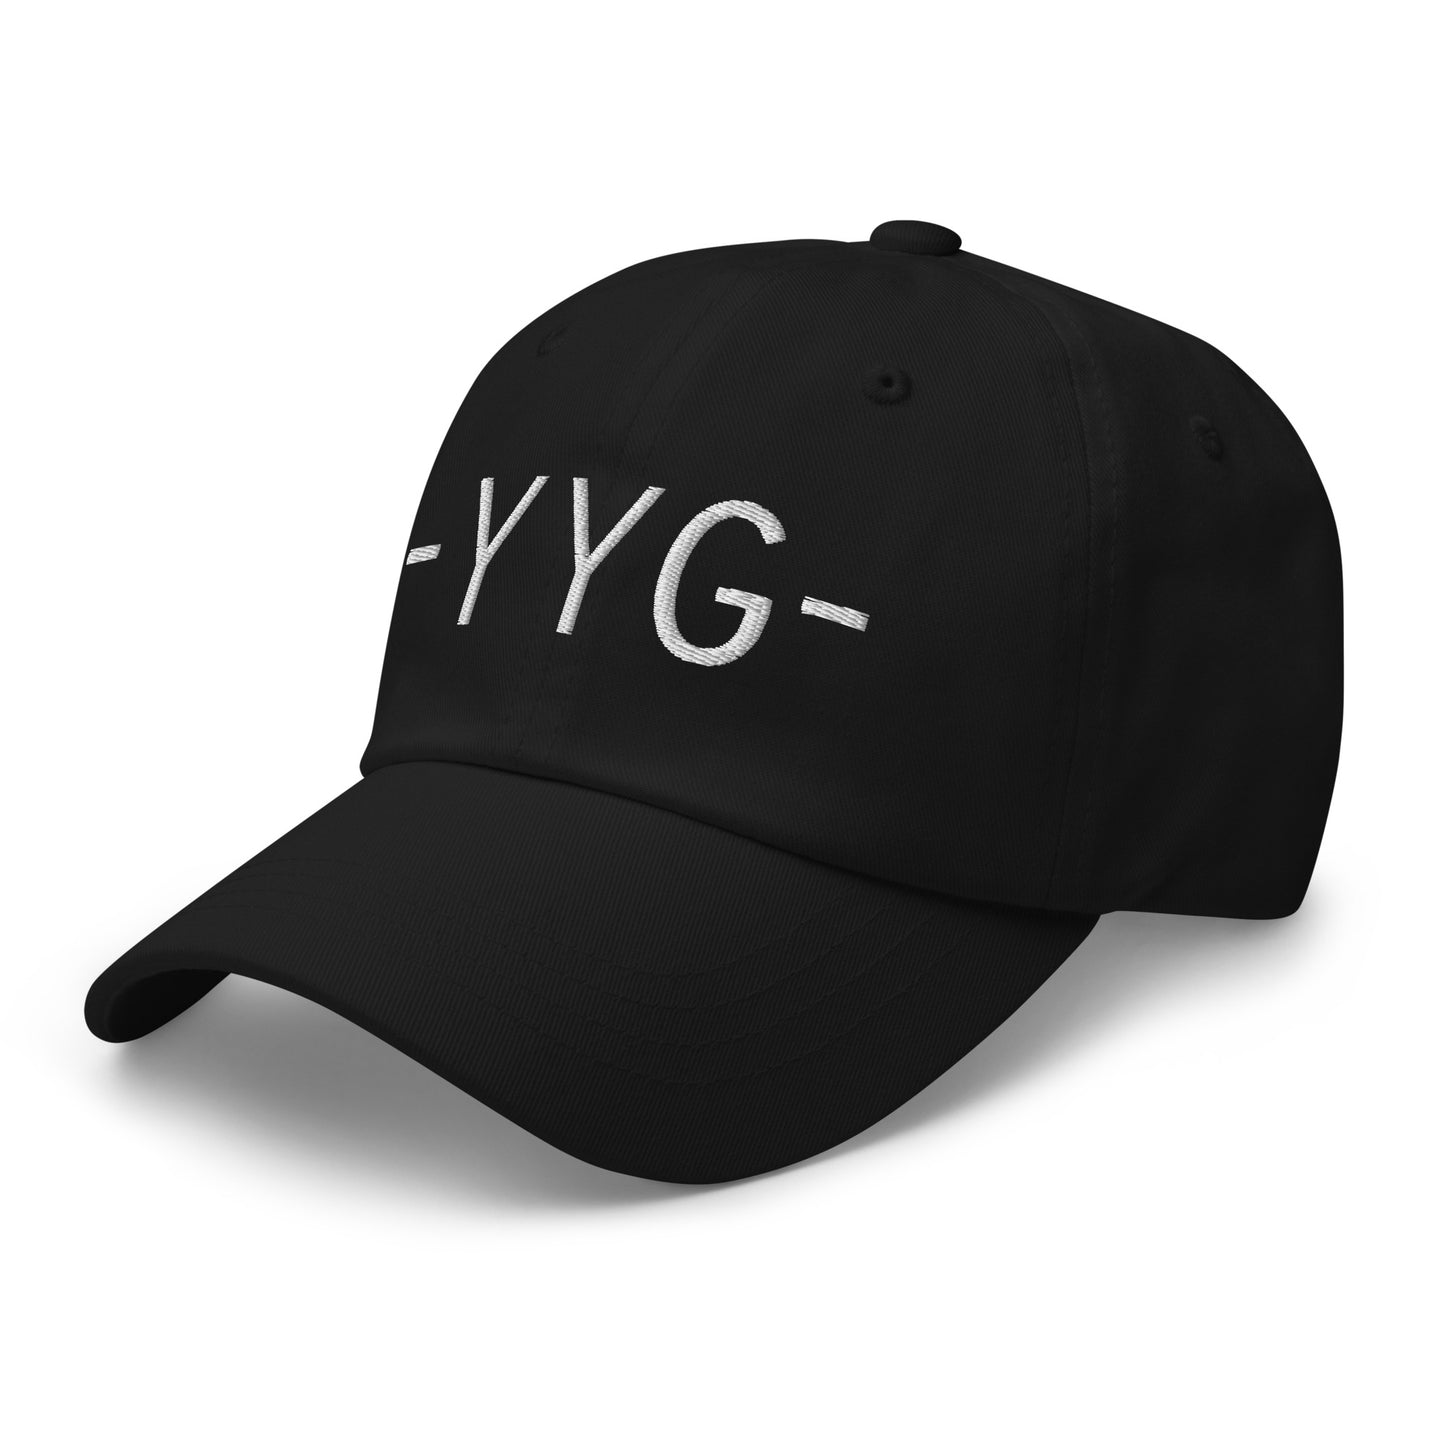 Souvenir Baseball Cap - White • YYG Charlottetown • YHM Designs - Image 13